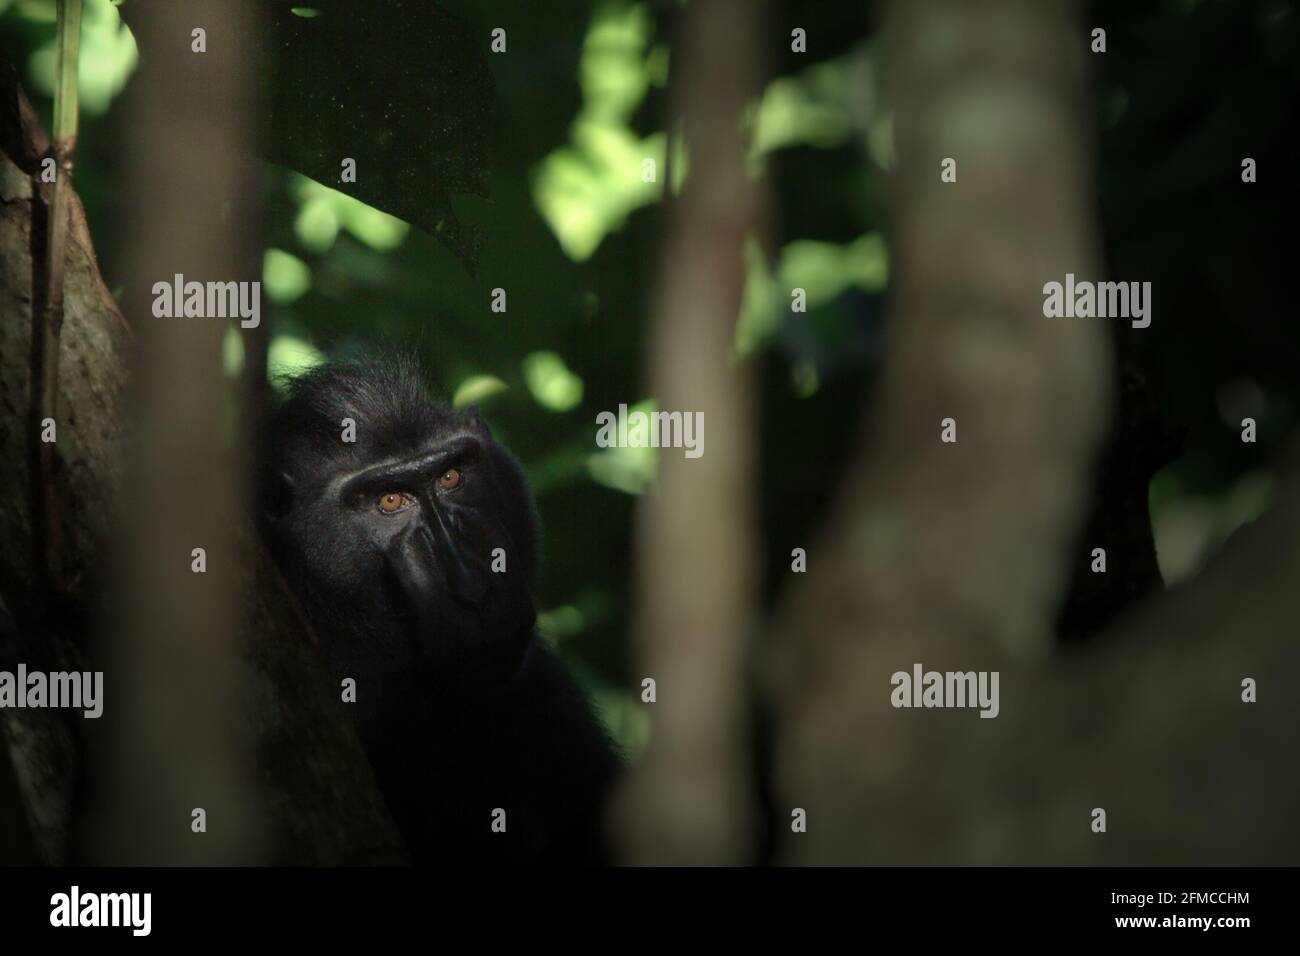 Macaco crestato guardando curiosamente in macchina fotografica. Foto Stock